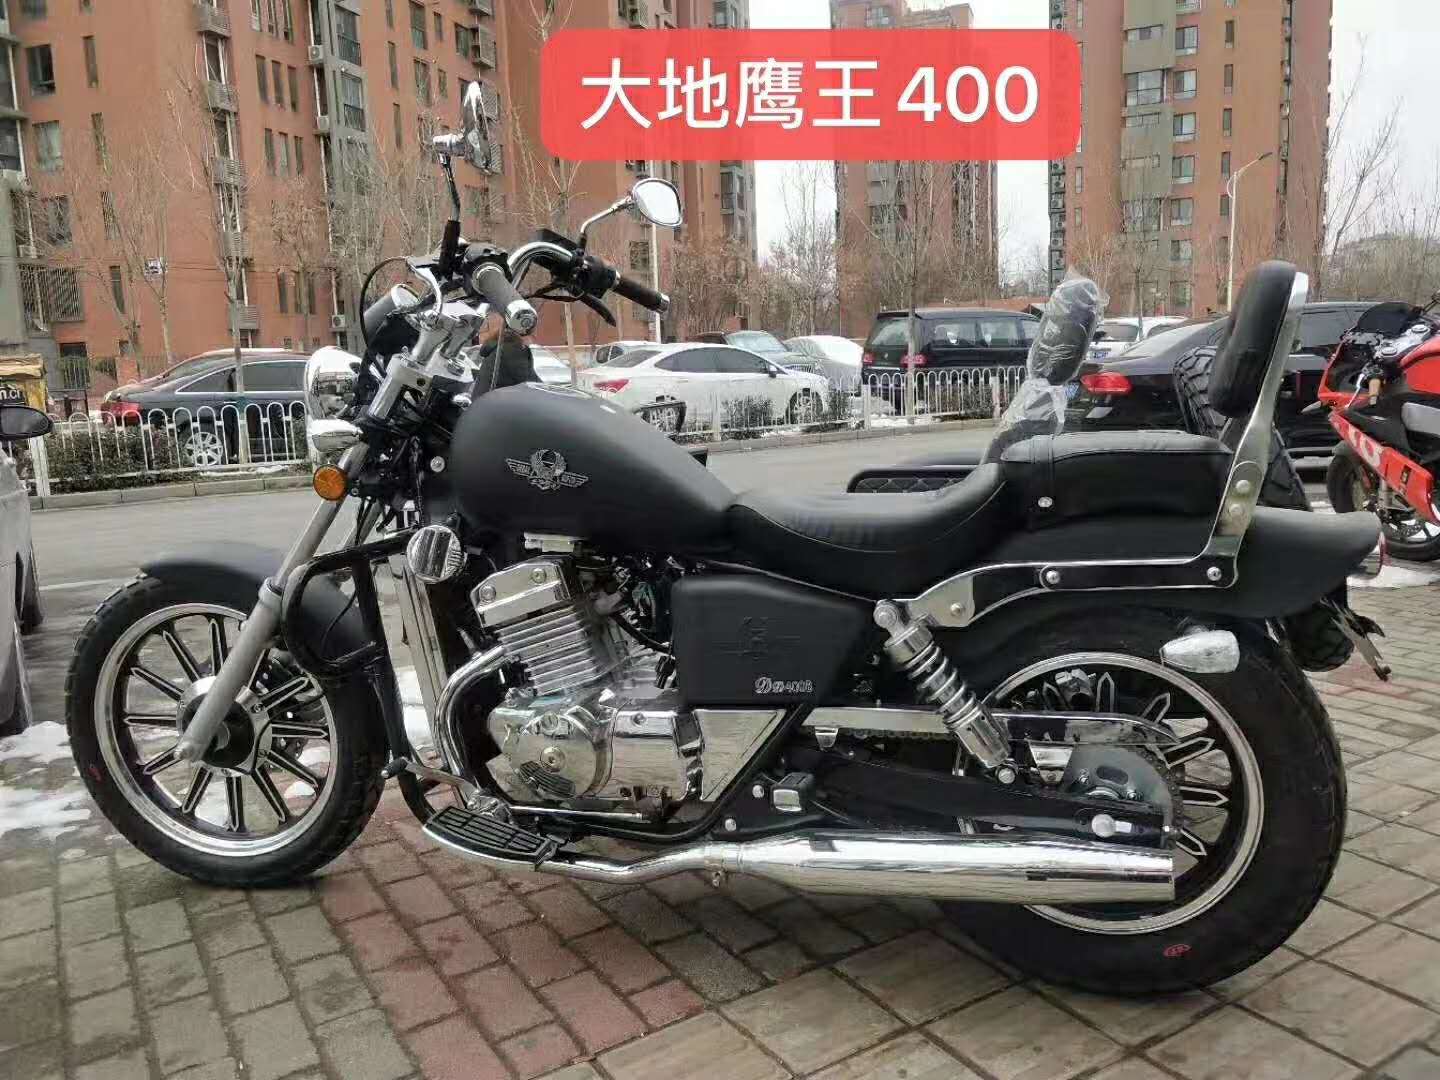 上海大地鹰王400摩托车生产厂商 哪家价格便宜